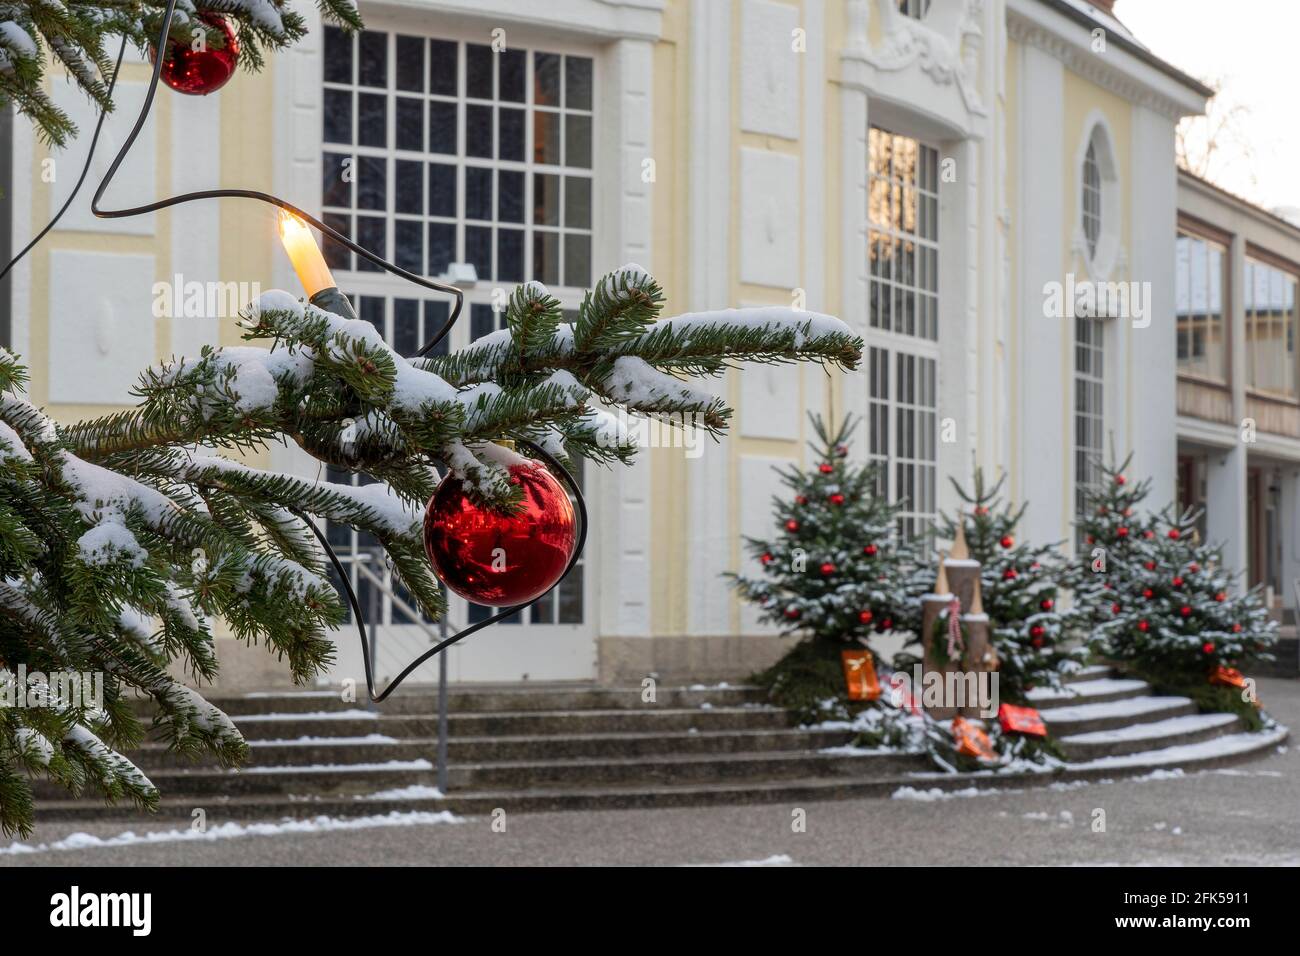 Winter - Weihnacht im abendlich-nächtlich-beleuchteten von Bad Reichenhall Foto Stock